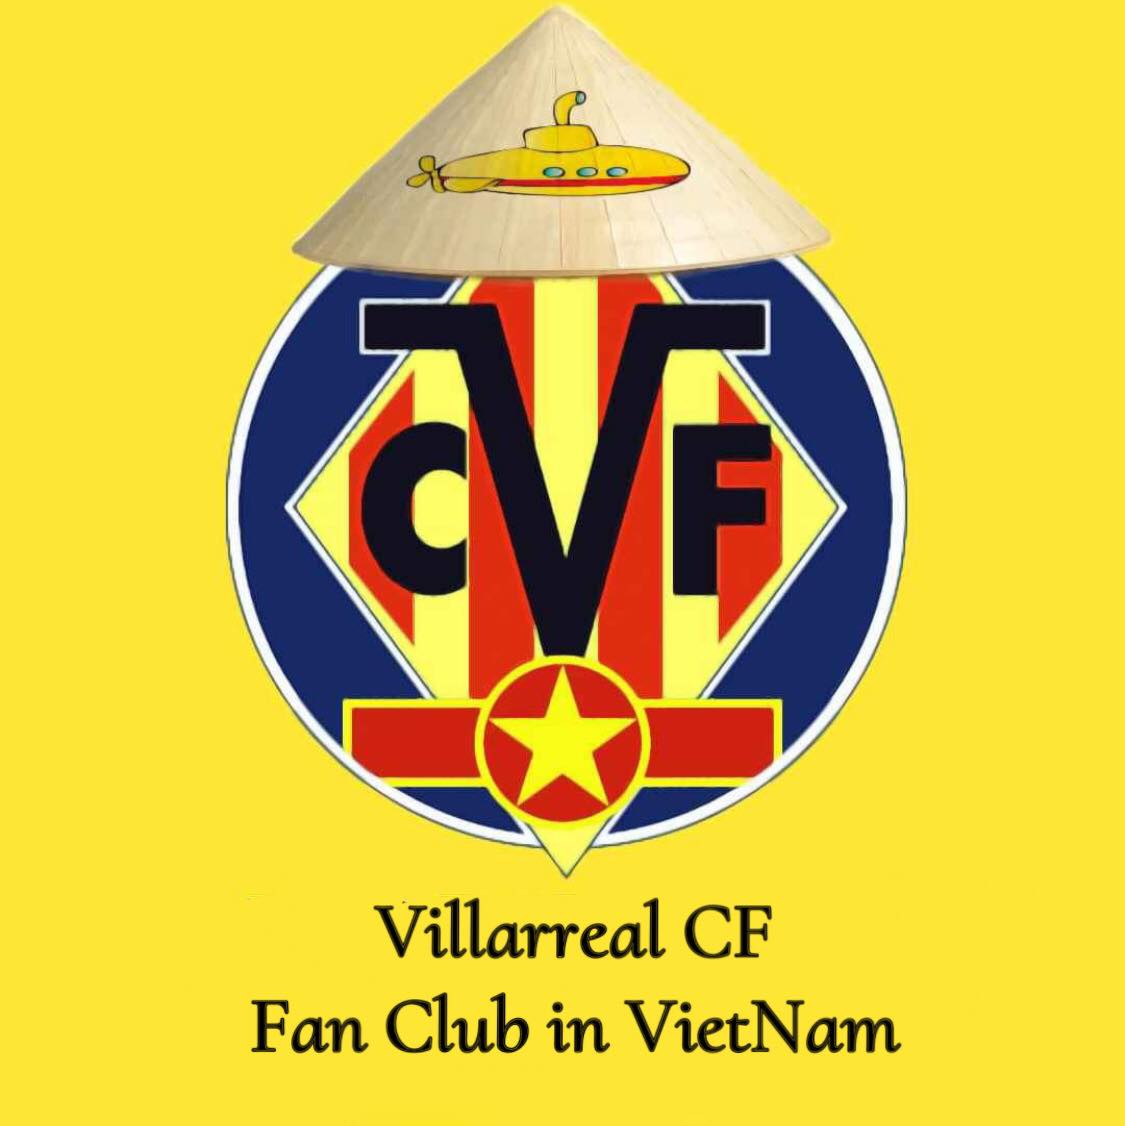 LOGO Villareal CF Fan club in VietNam